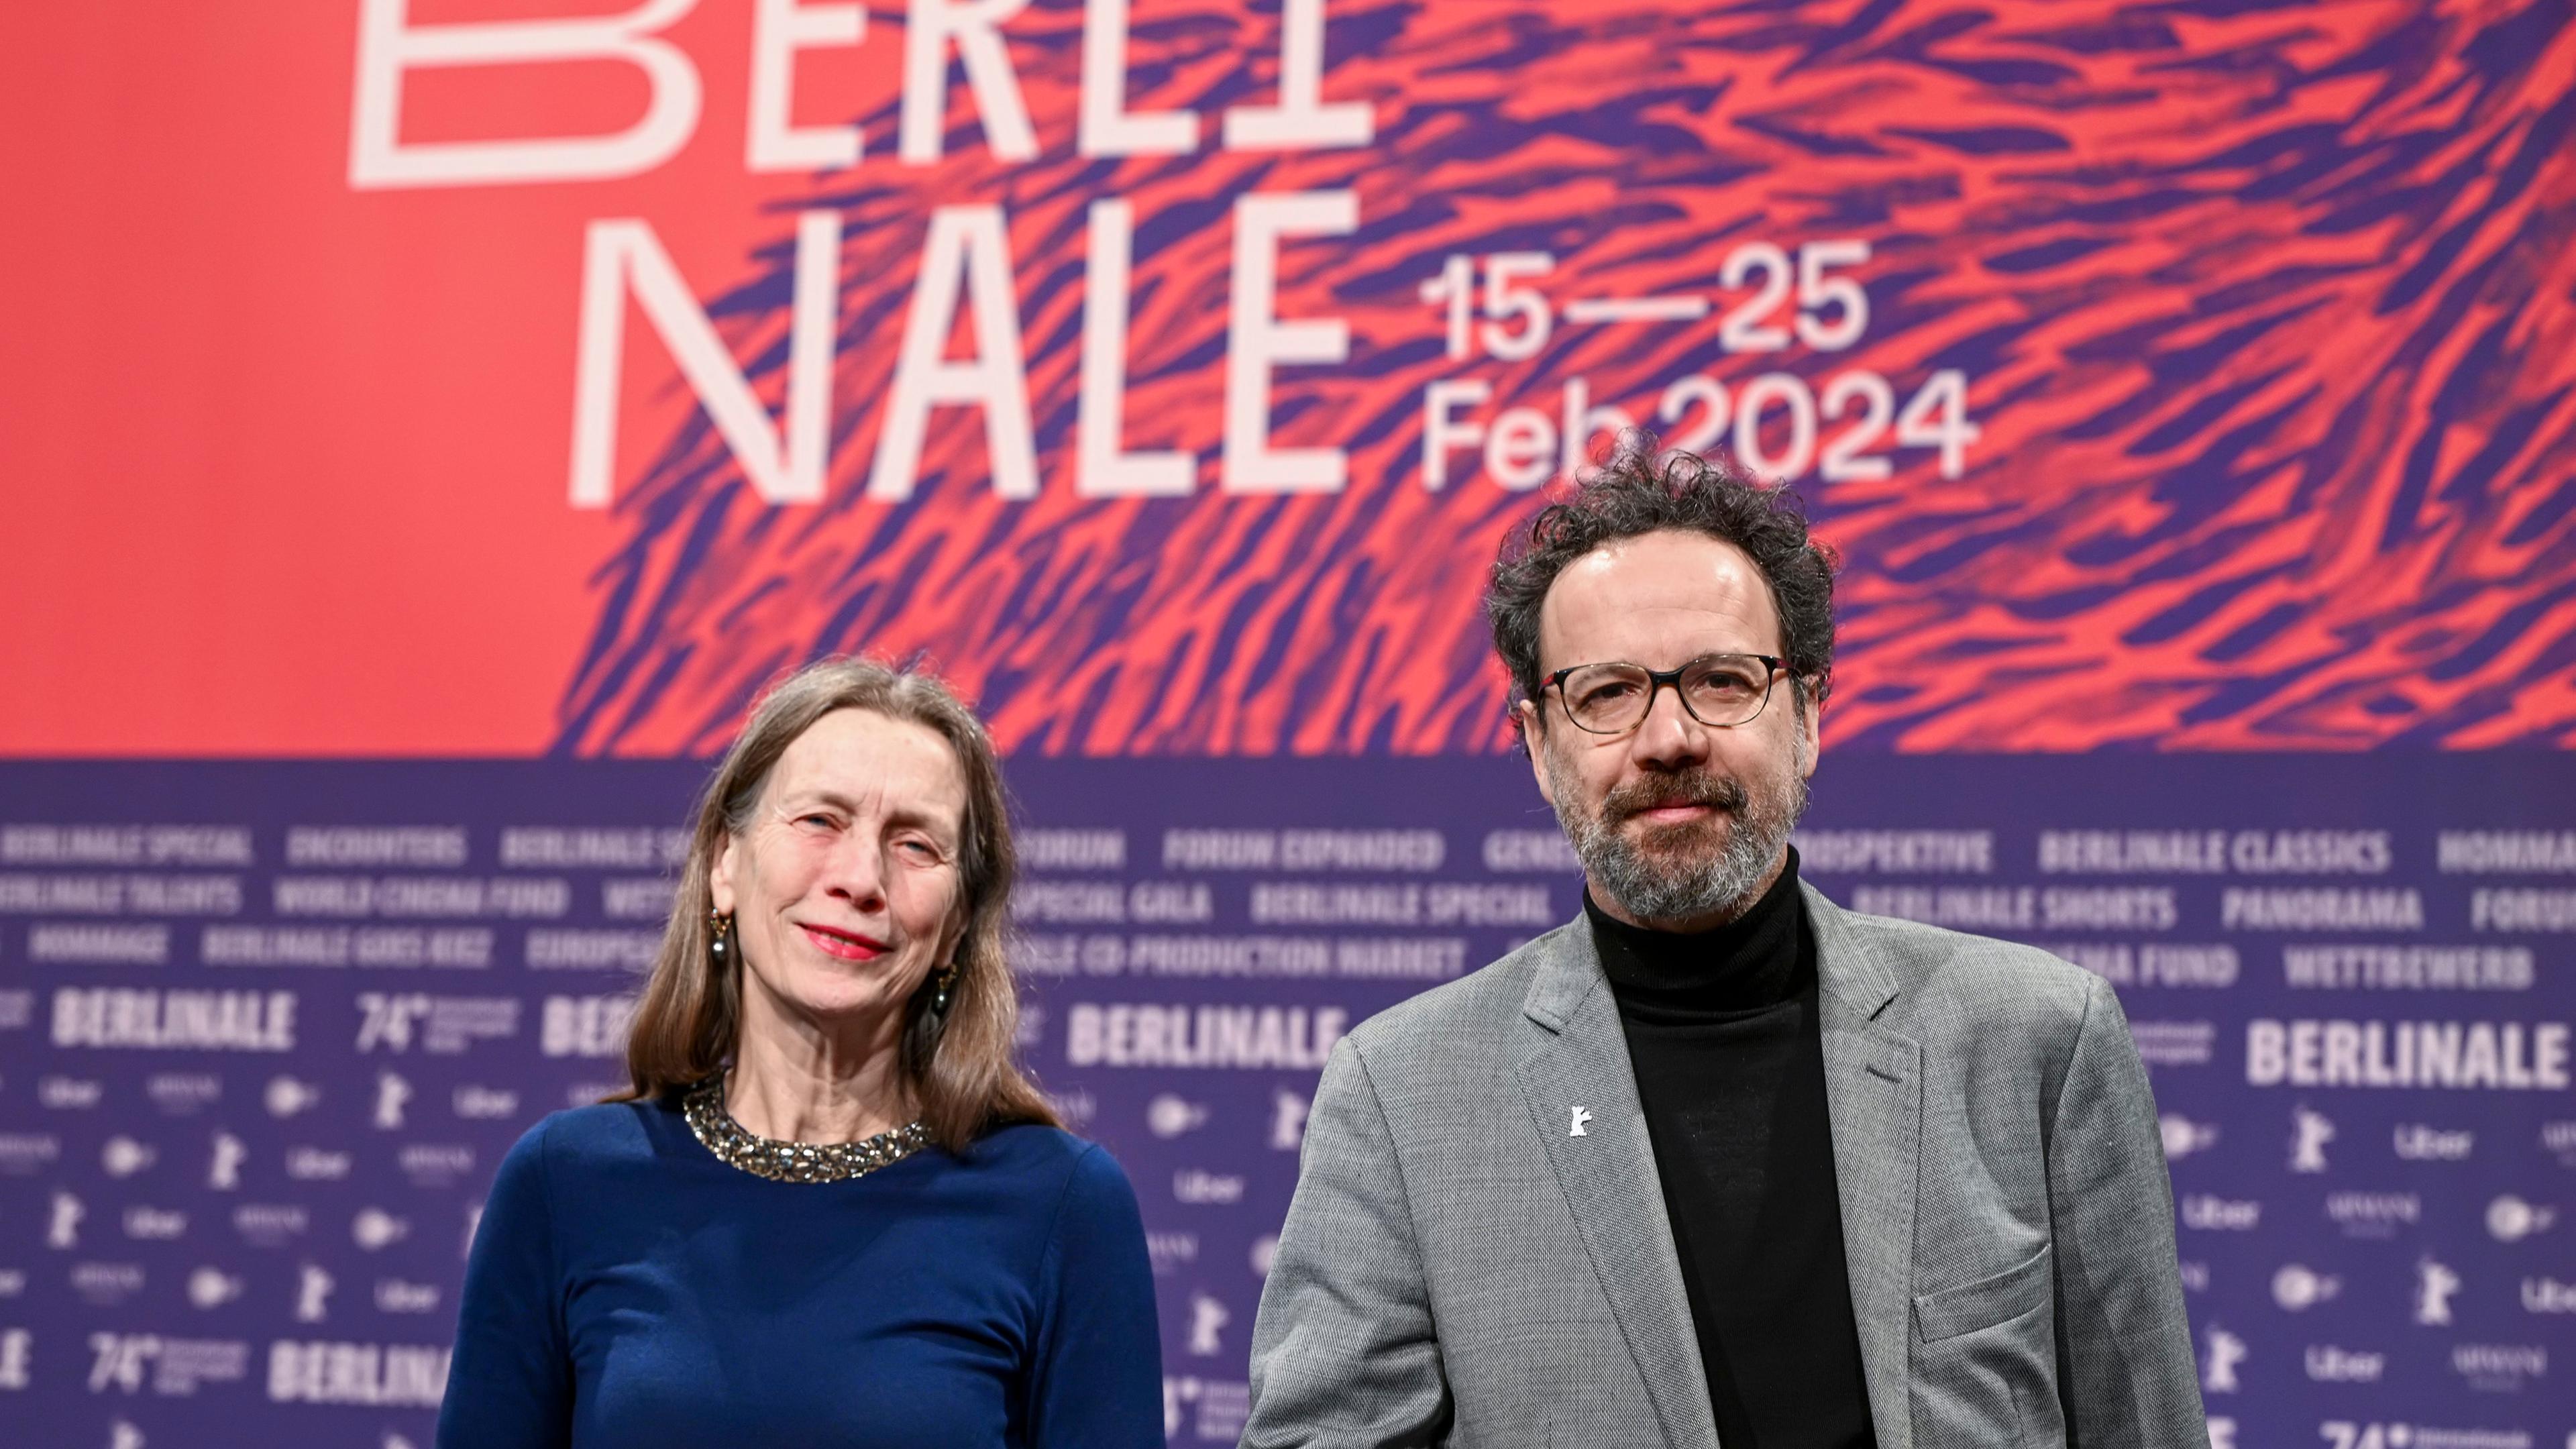 Eine ältere Frau und ein Mann mit Bart stehen vor einem großen Plakat für die Berlinale 2024.